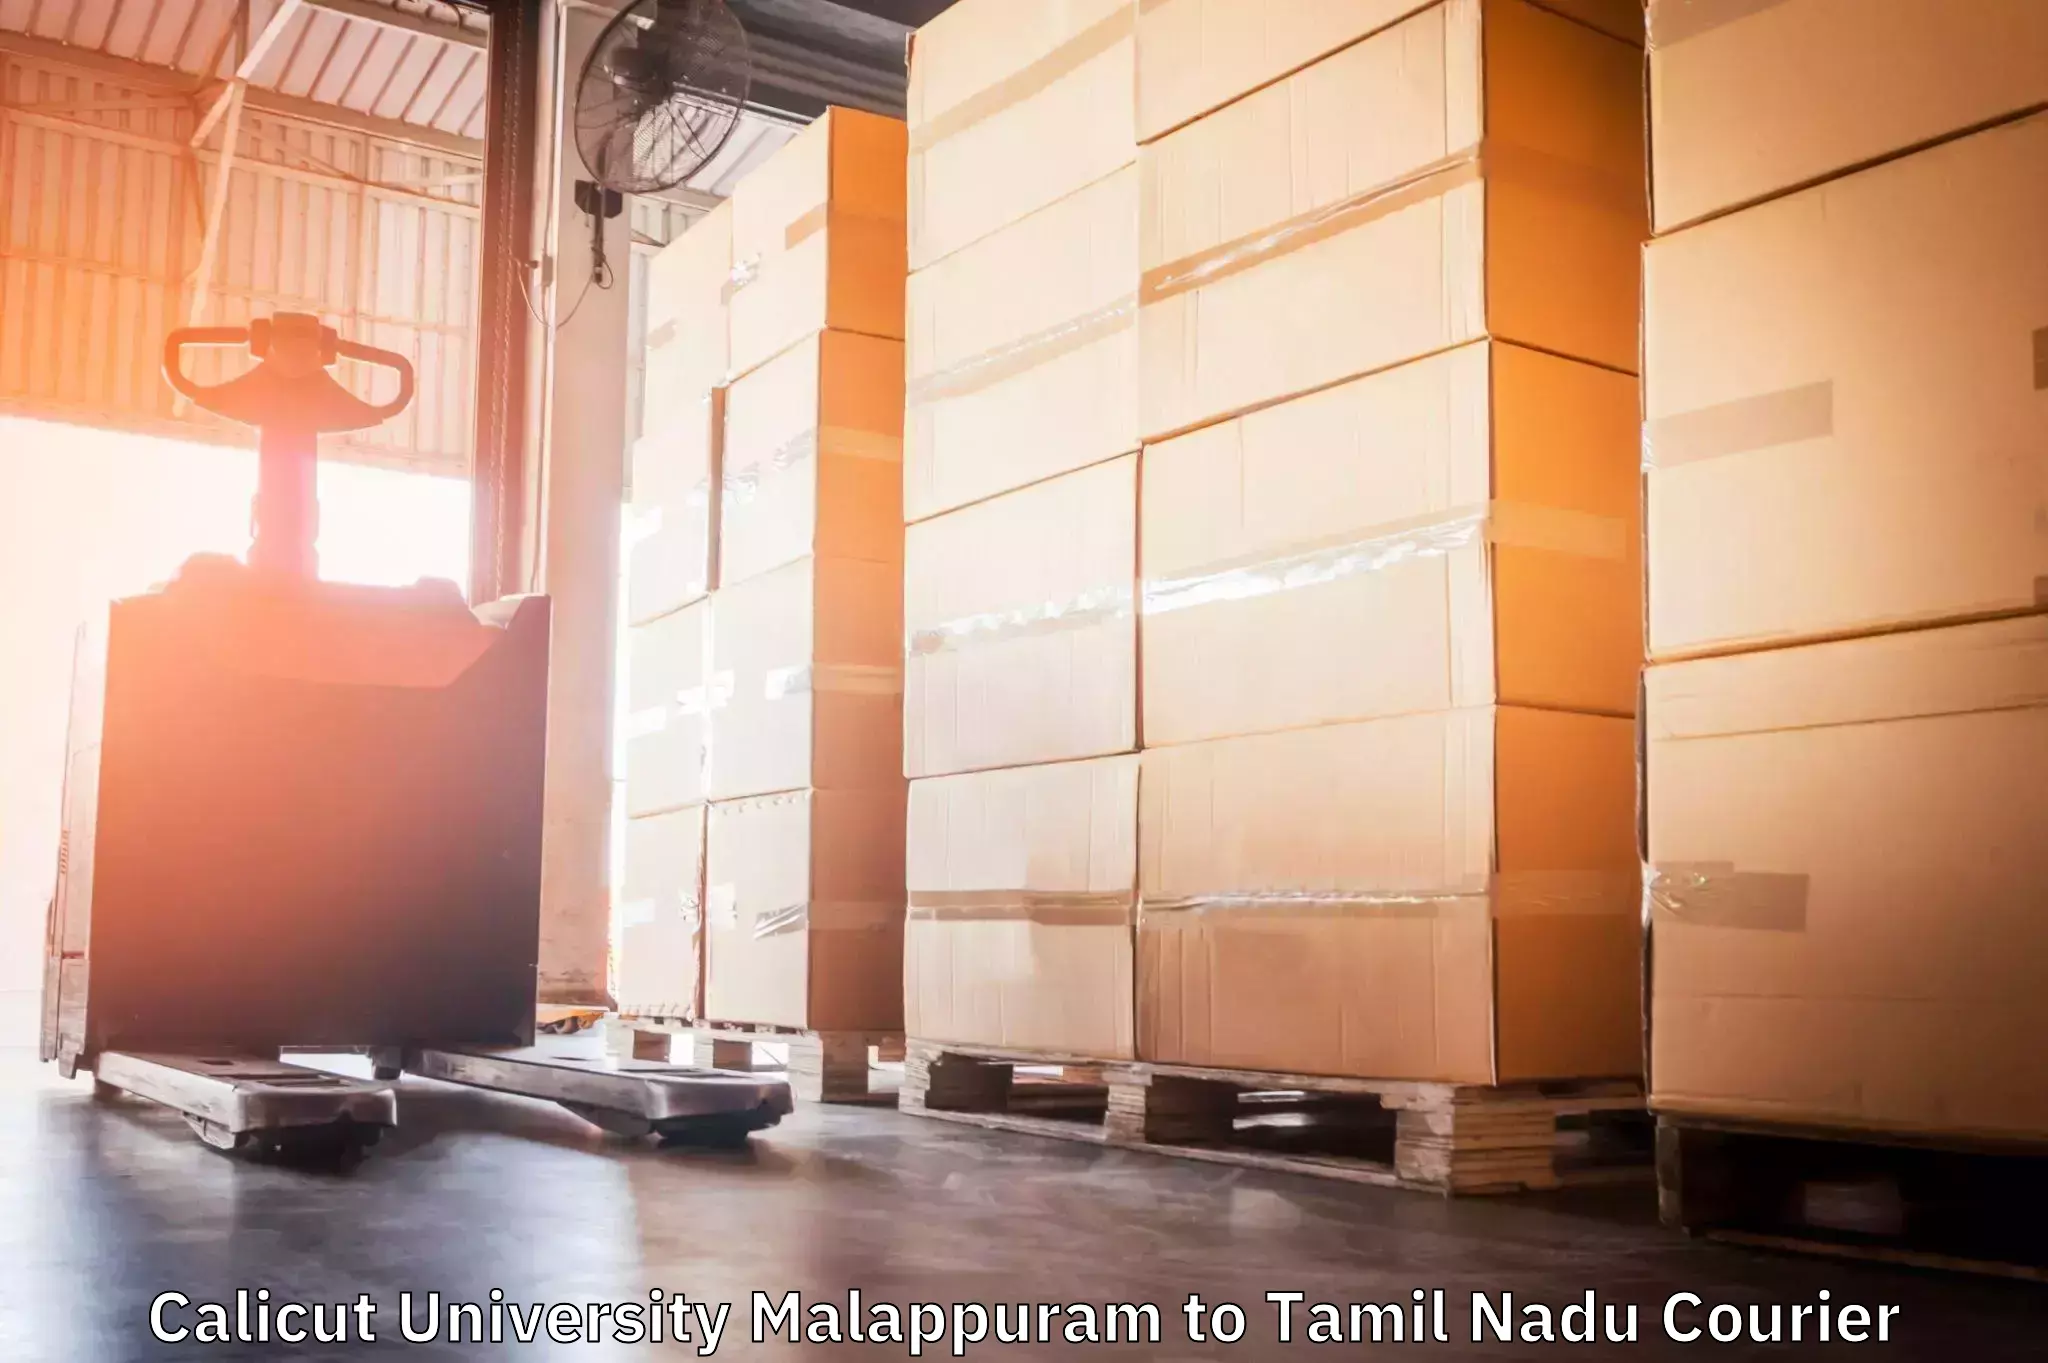 Customizable shipping options Calicut University Malappuram to Ambattur